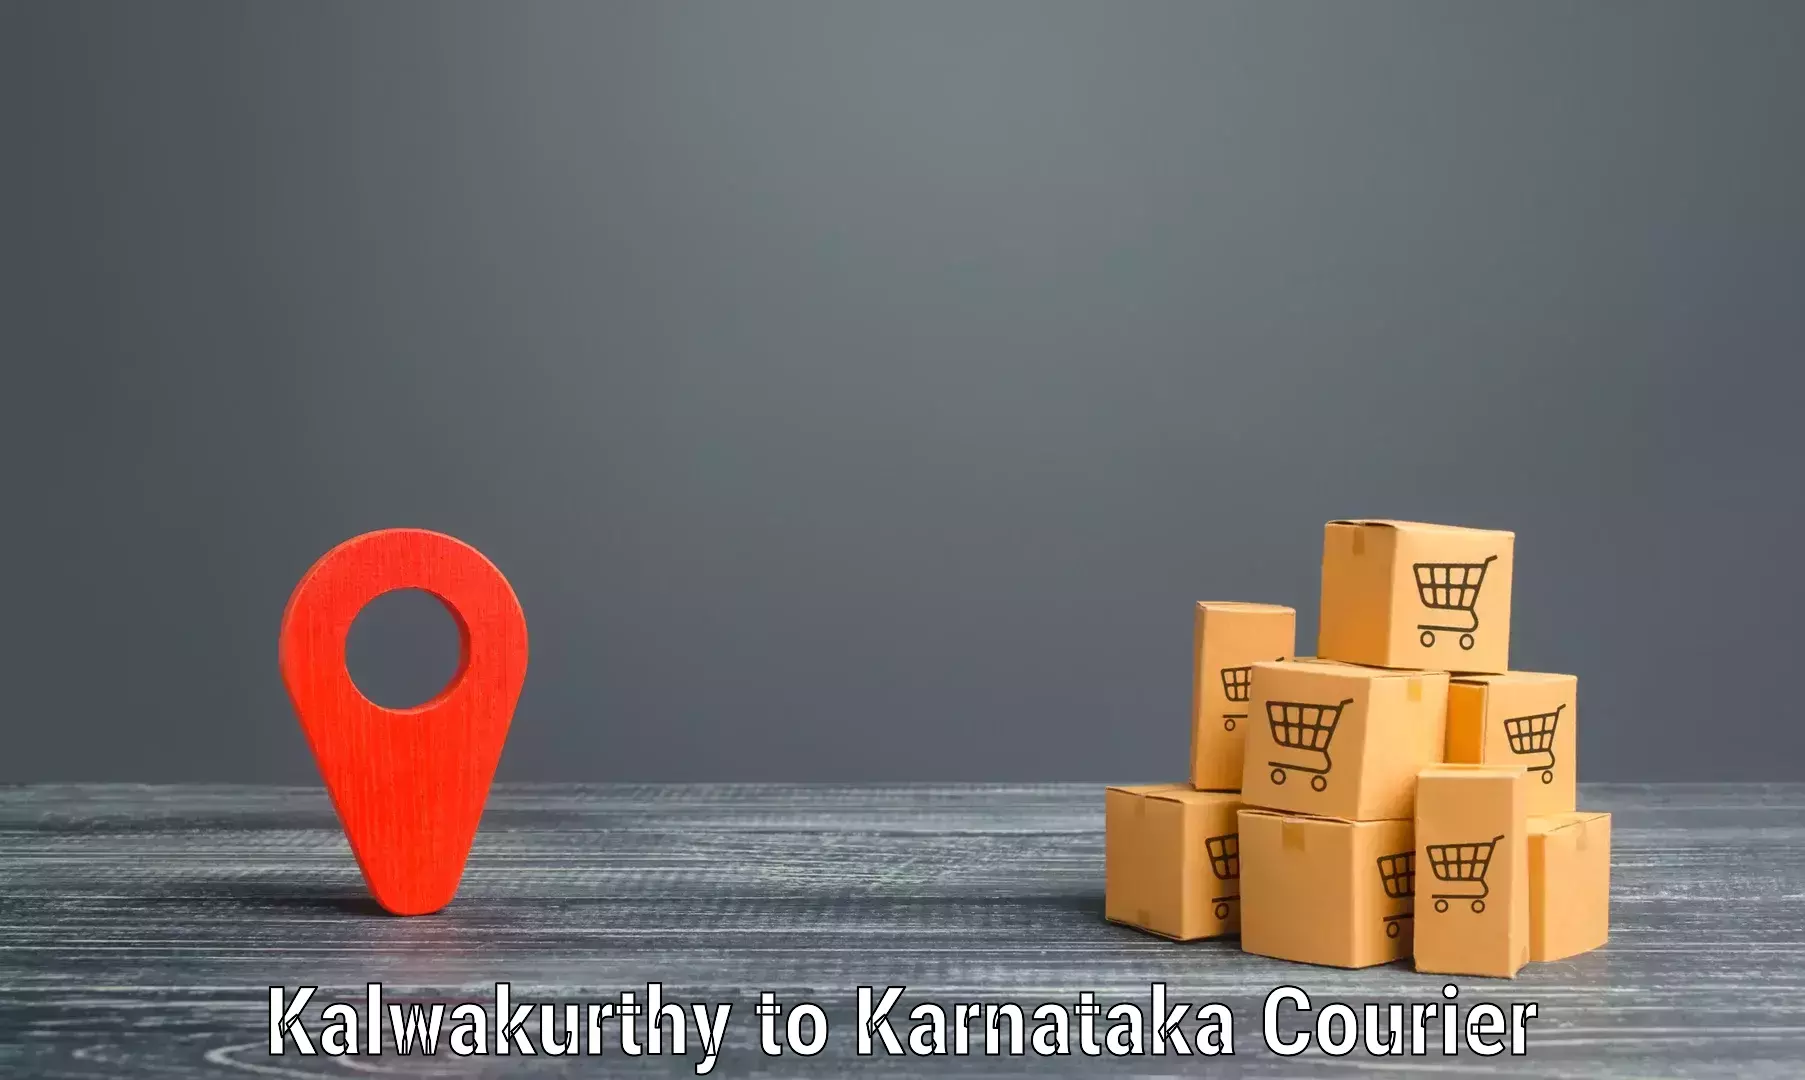 Comprehensive freight services Kalwakurthy to Tumkur